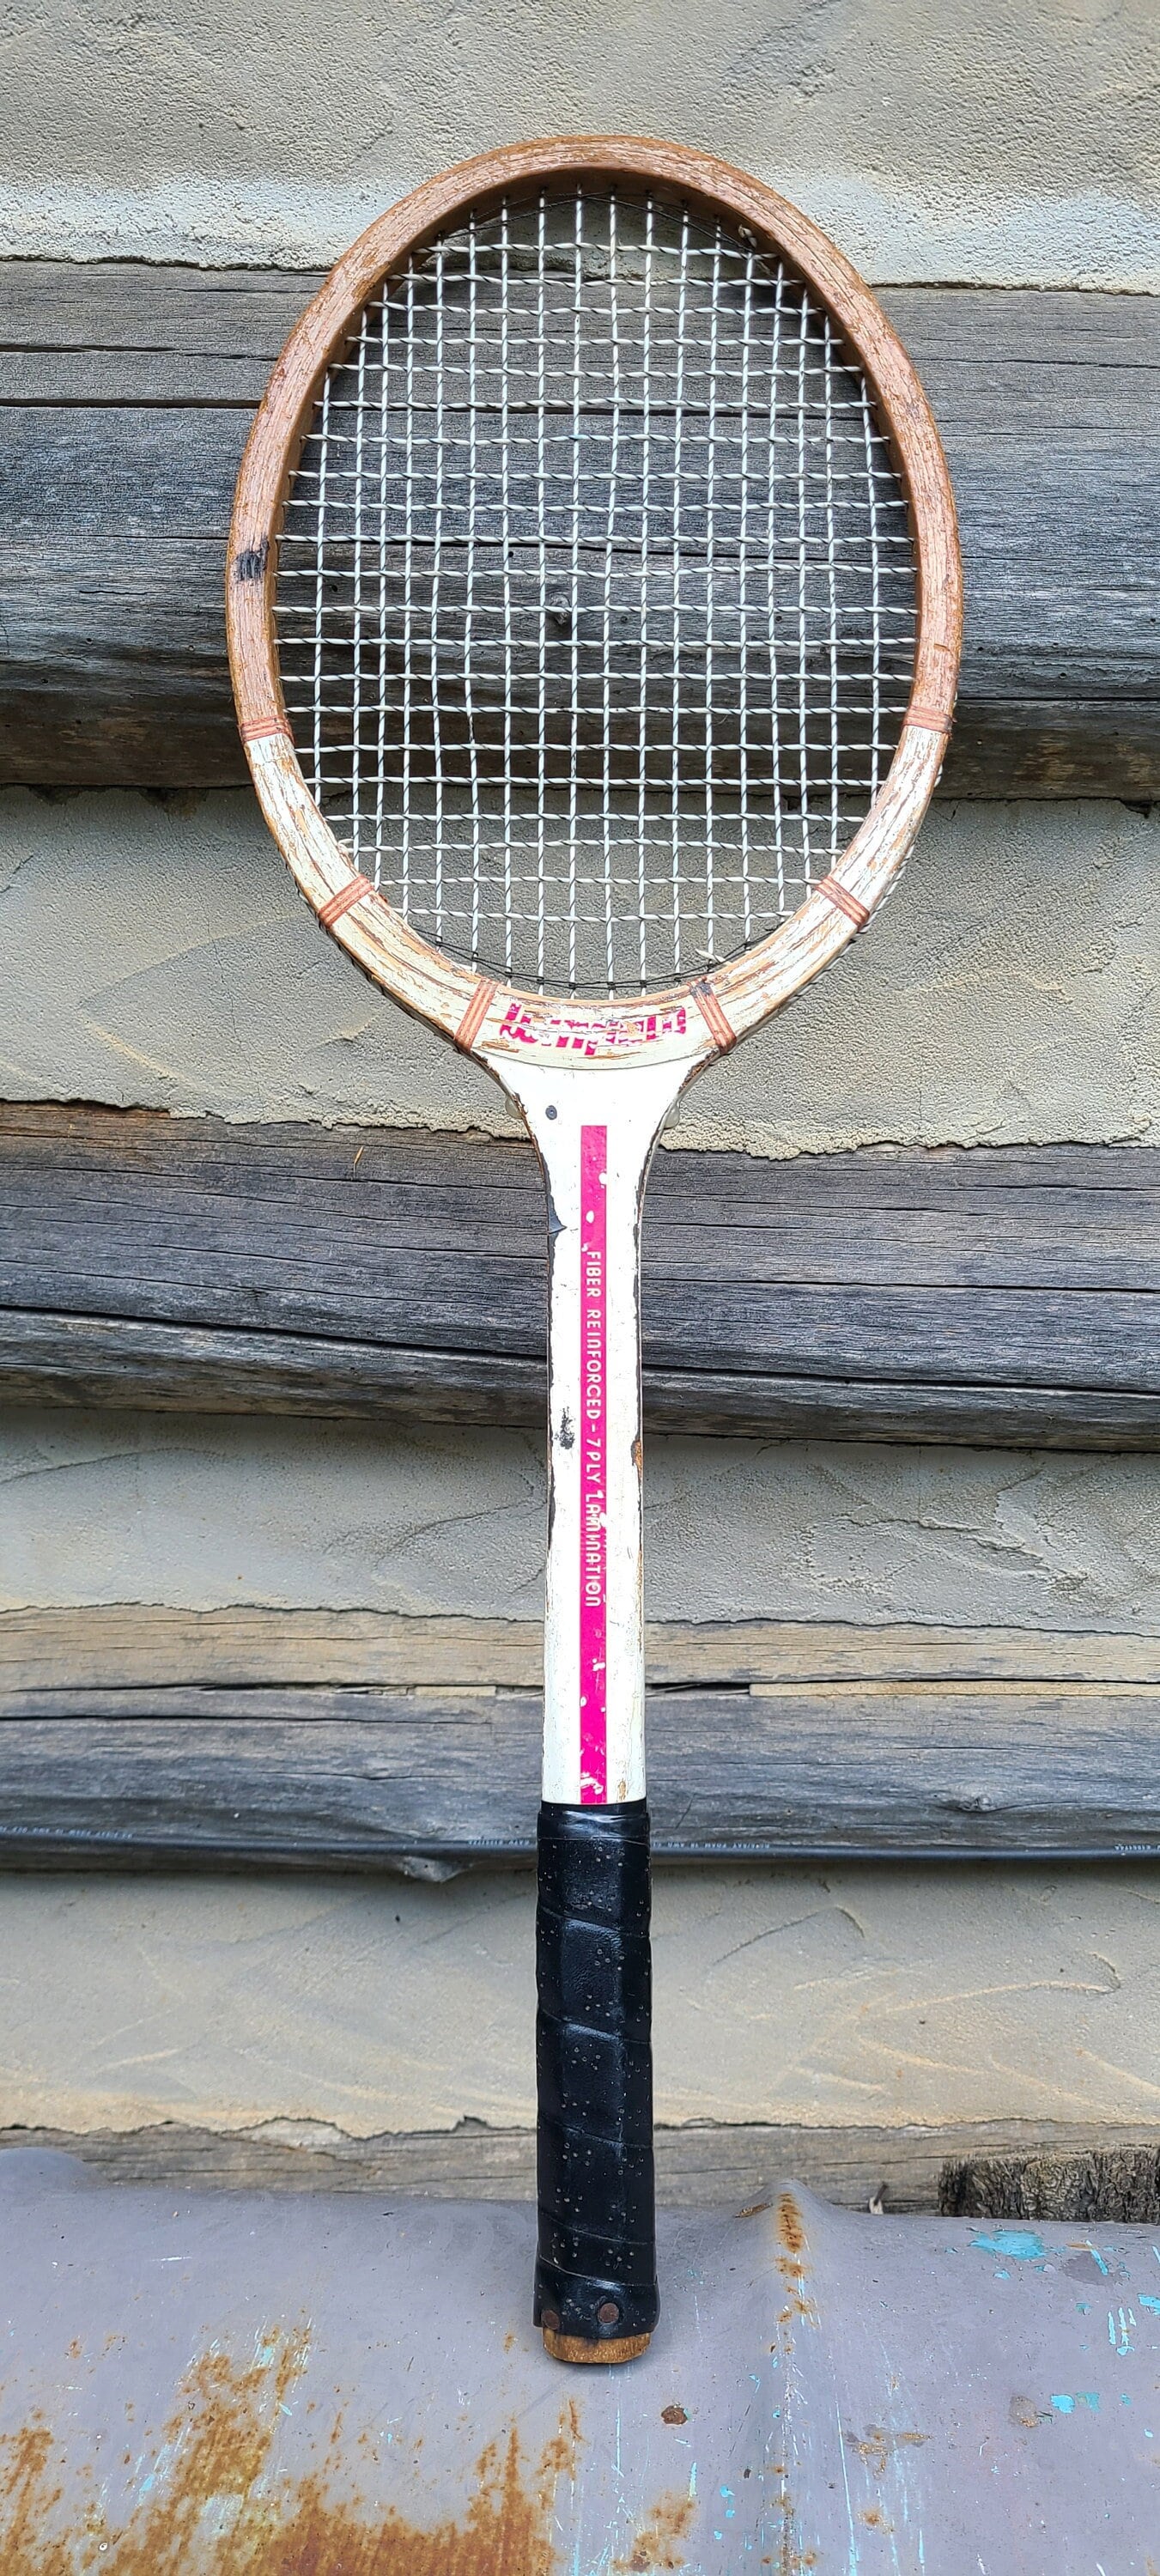 Raquettes de tennis pour les enfants de 6-8 ans au meilleur prix